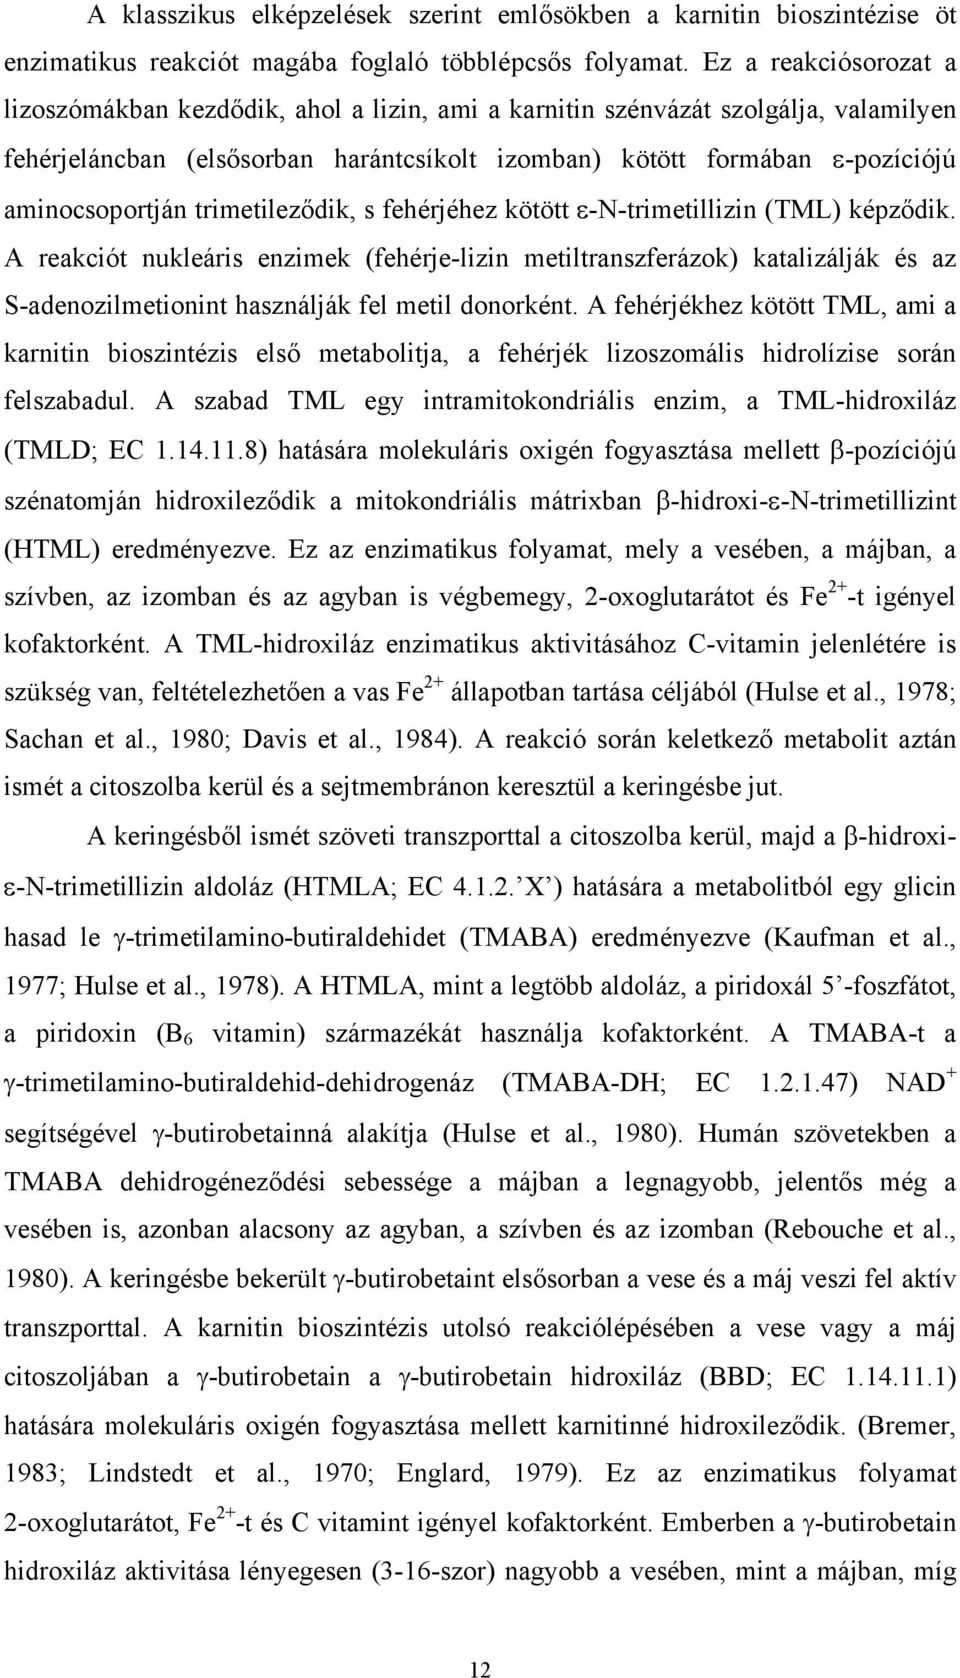 aminocsoportján trimetileződik, s fehérjéhez kötött ε-n-trimetillizin (TML) képződik.